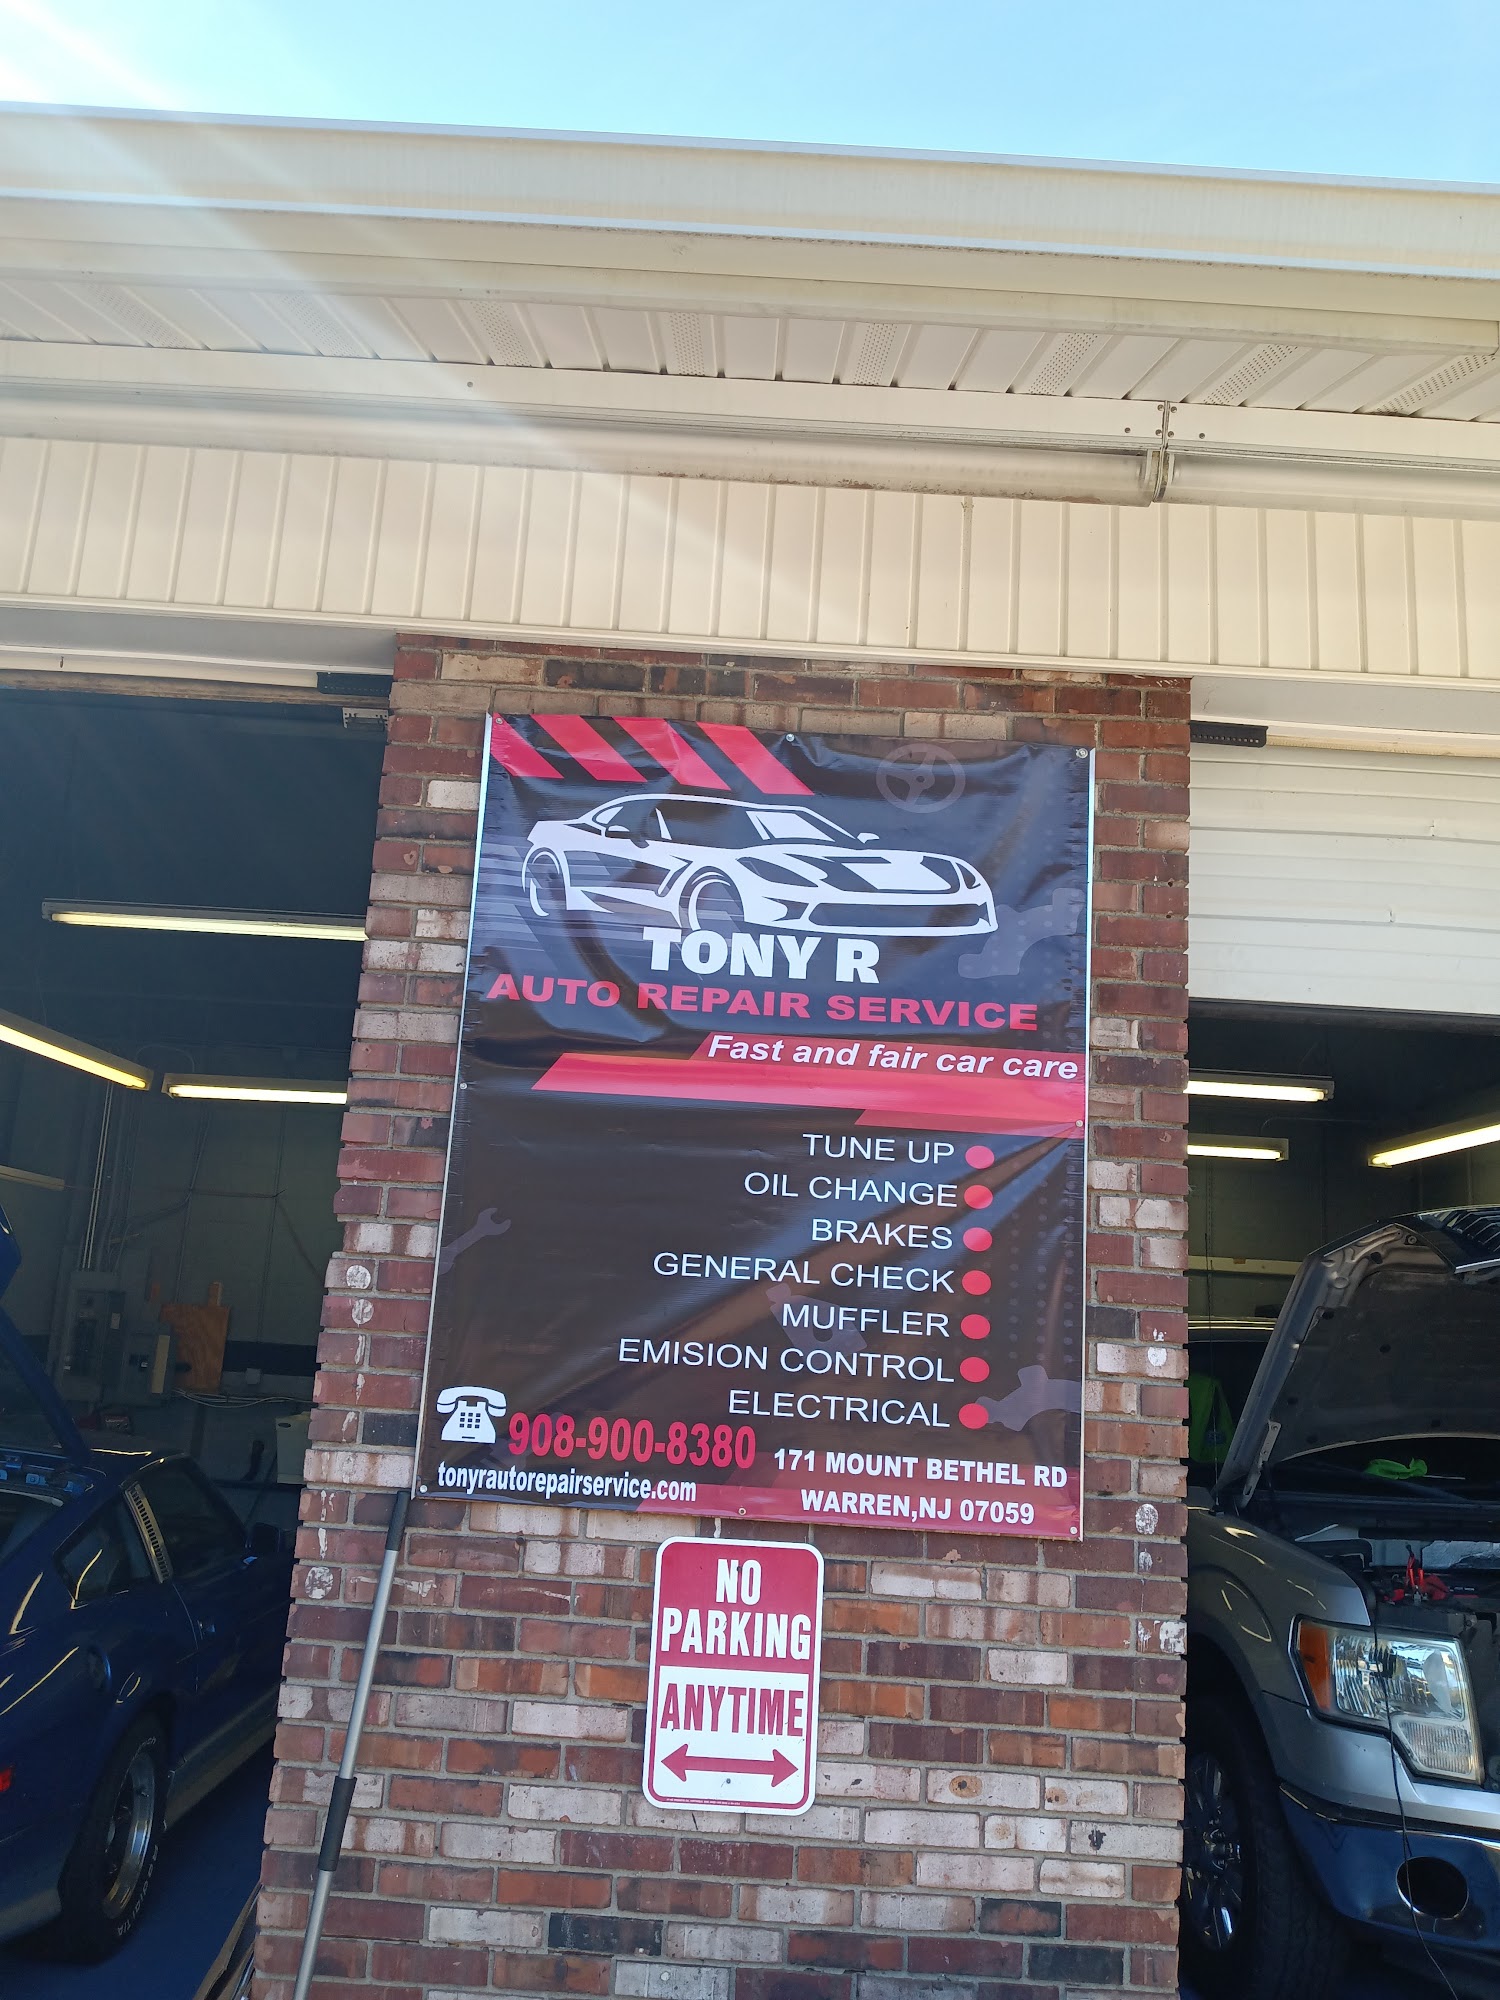 Tony R Auto Repair Services